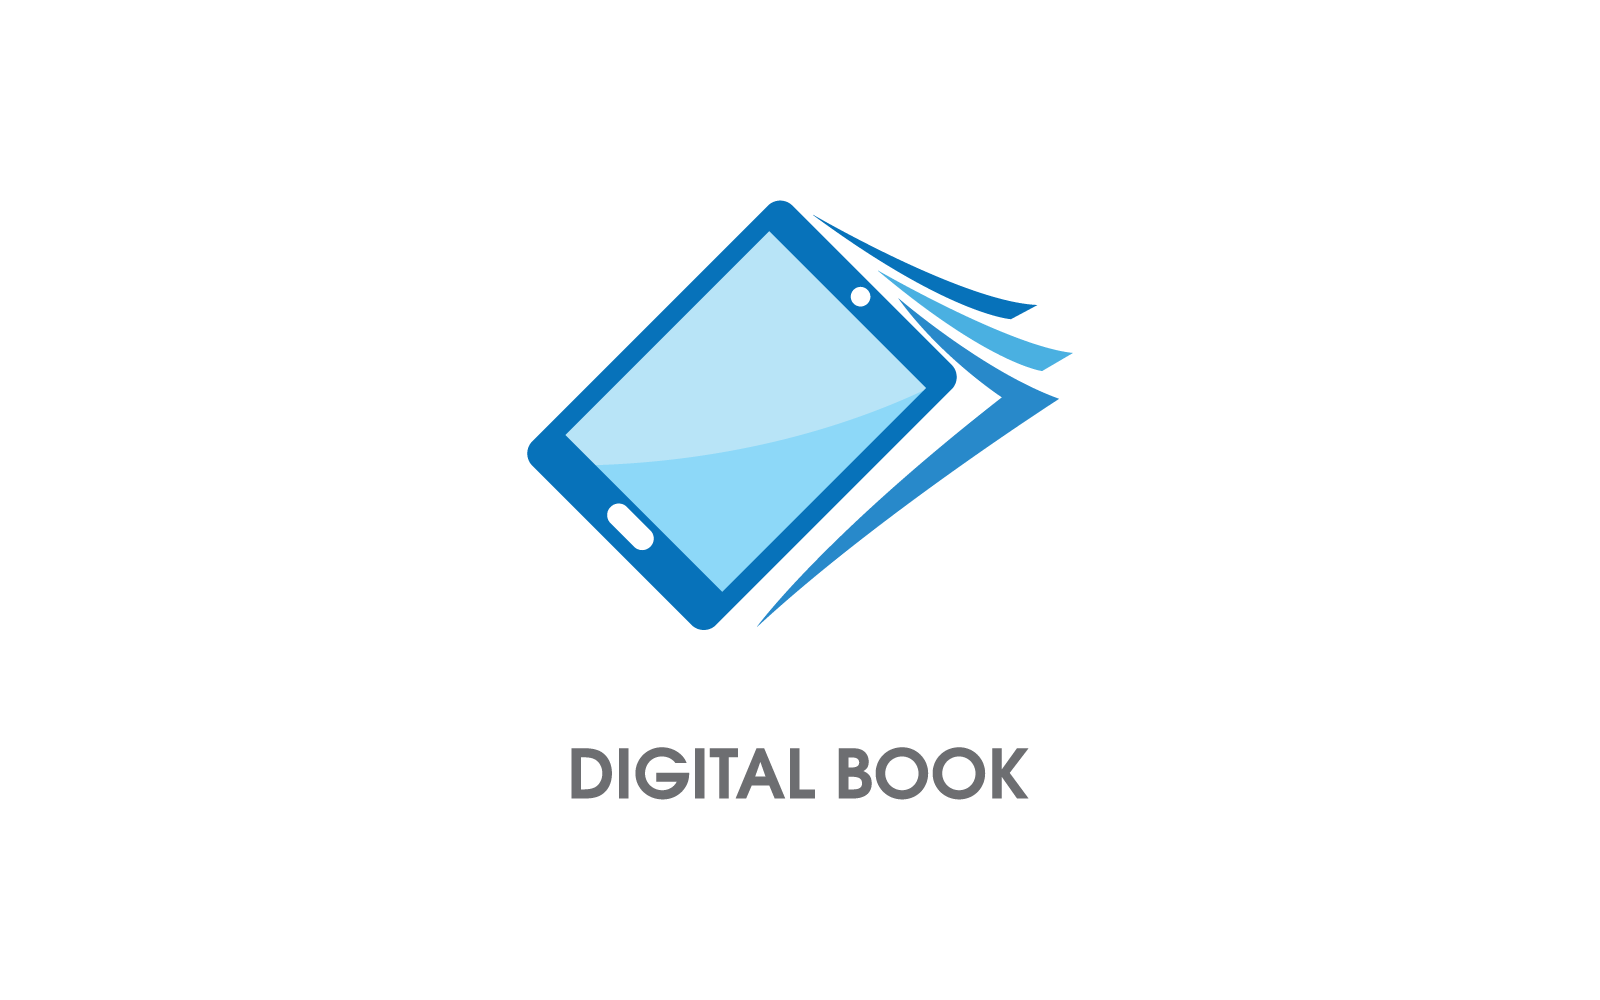 E- book modern digital book logo design vector Logo Template